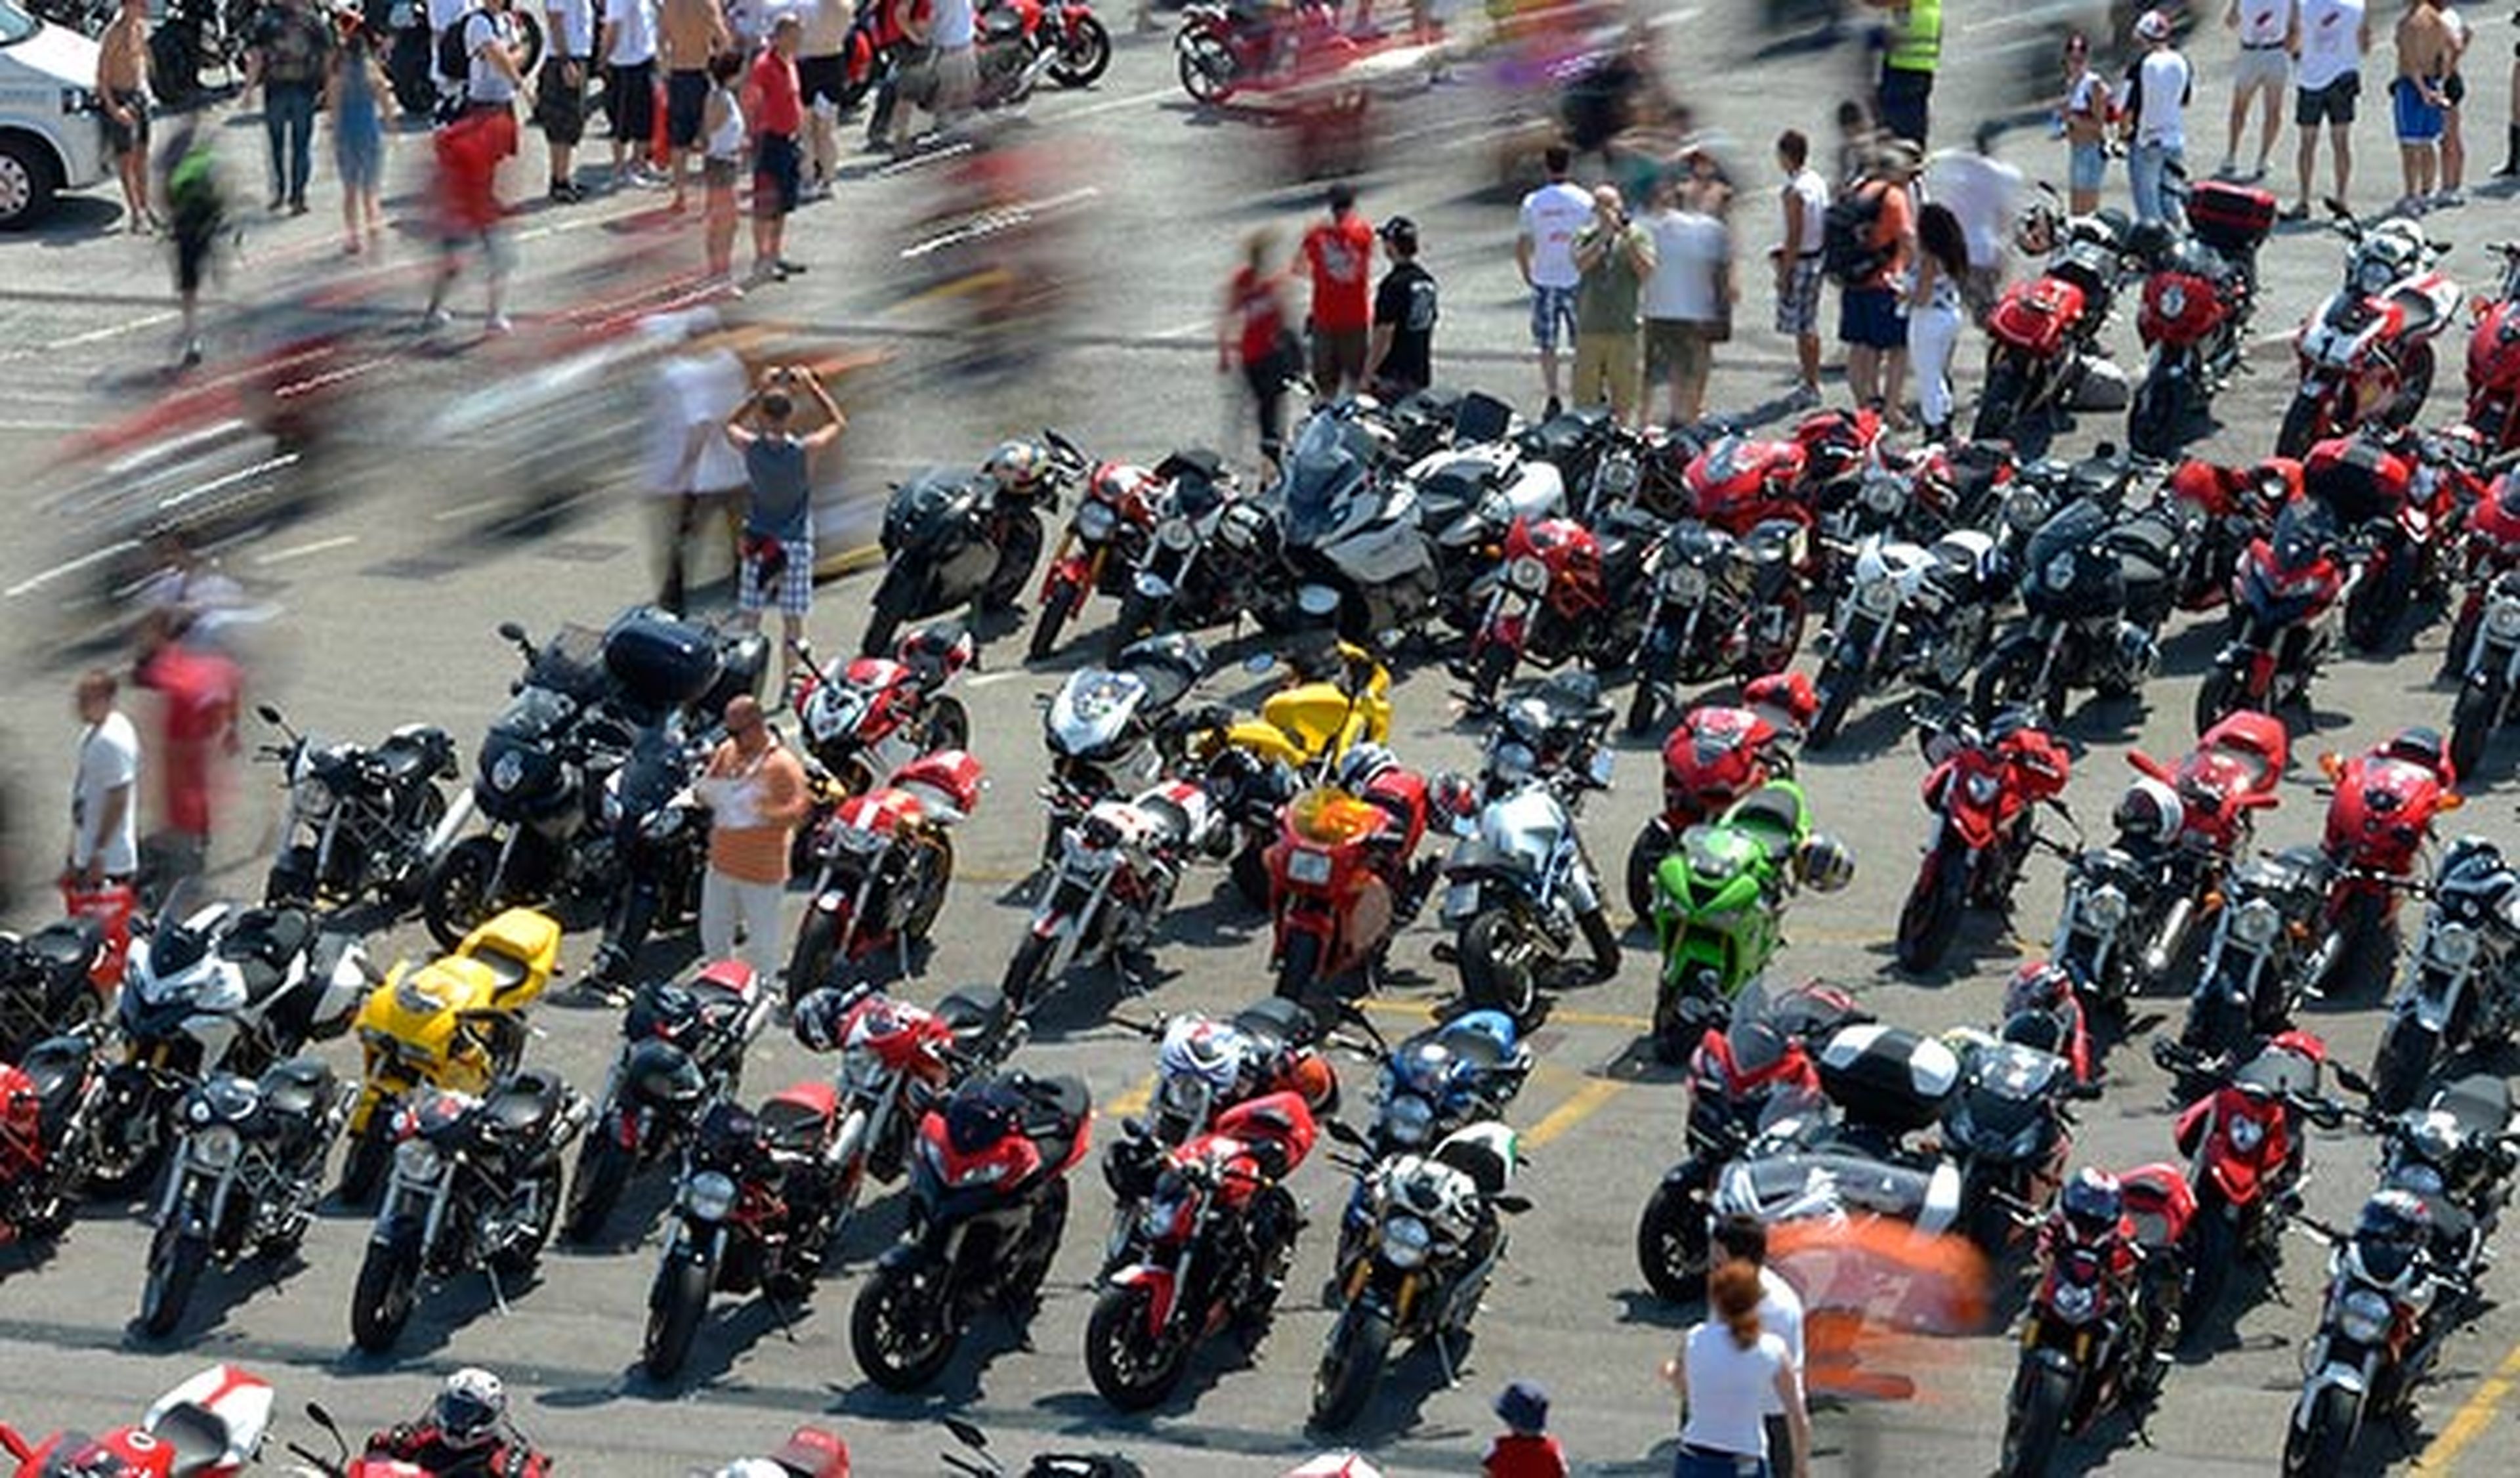 Las ventas de motos usadas también crecieron en 2014